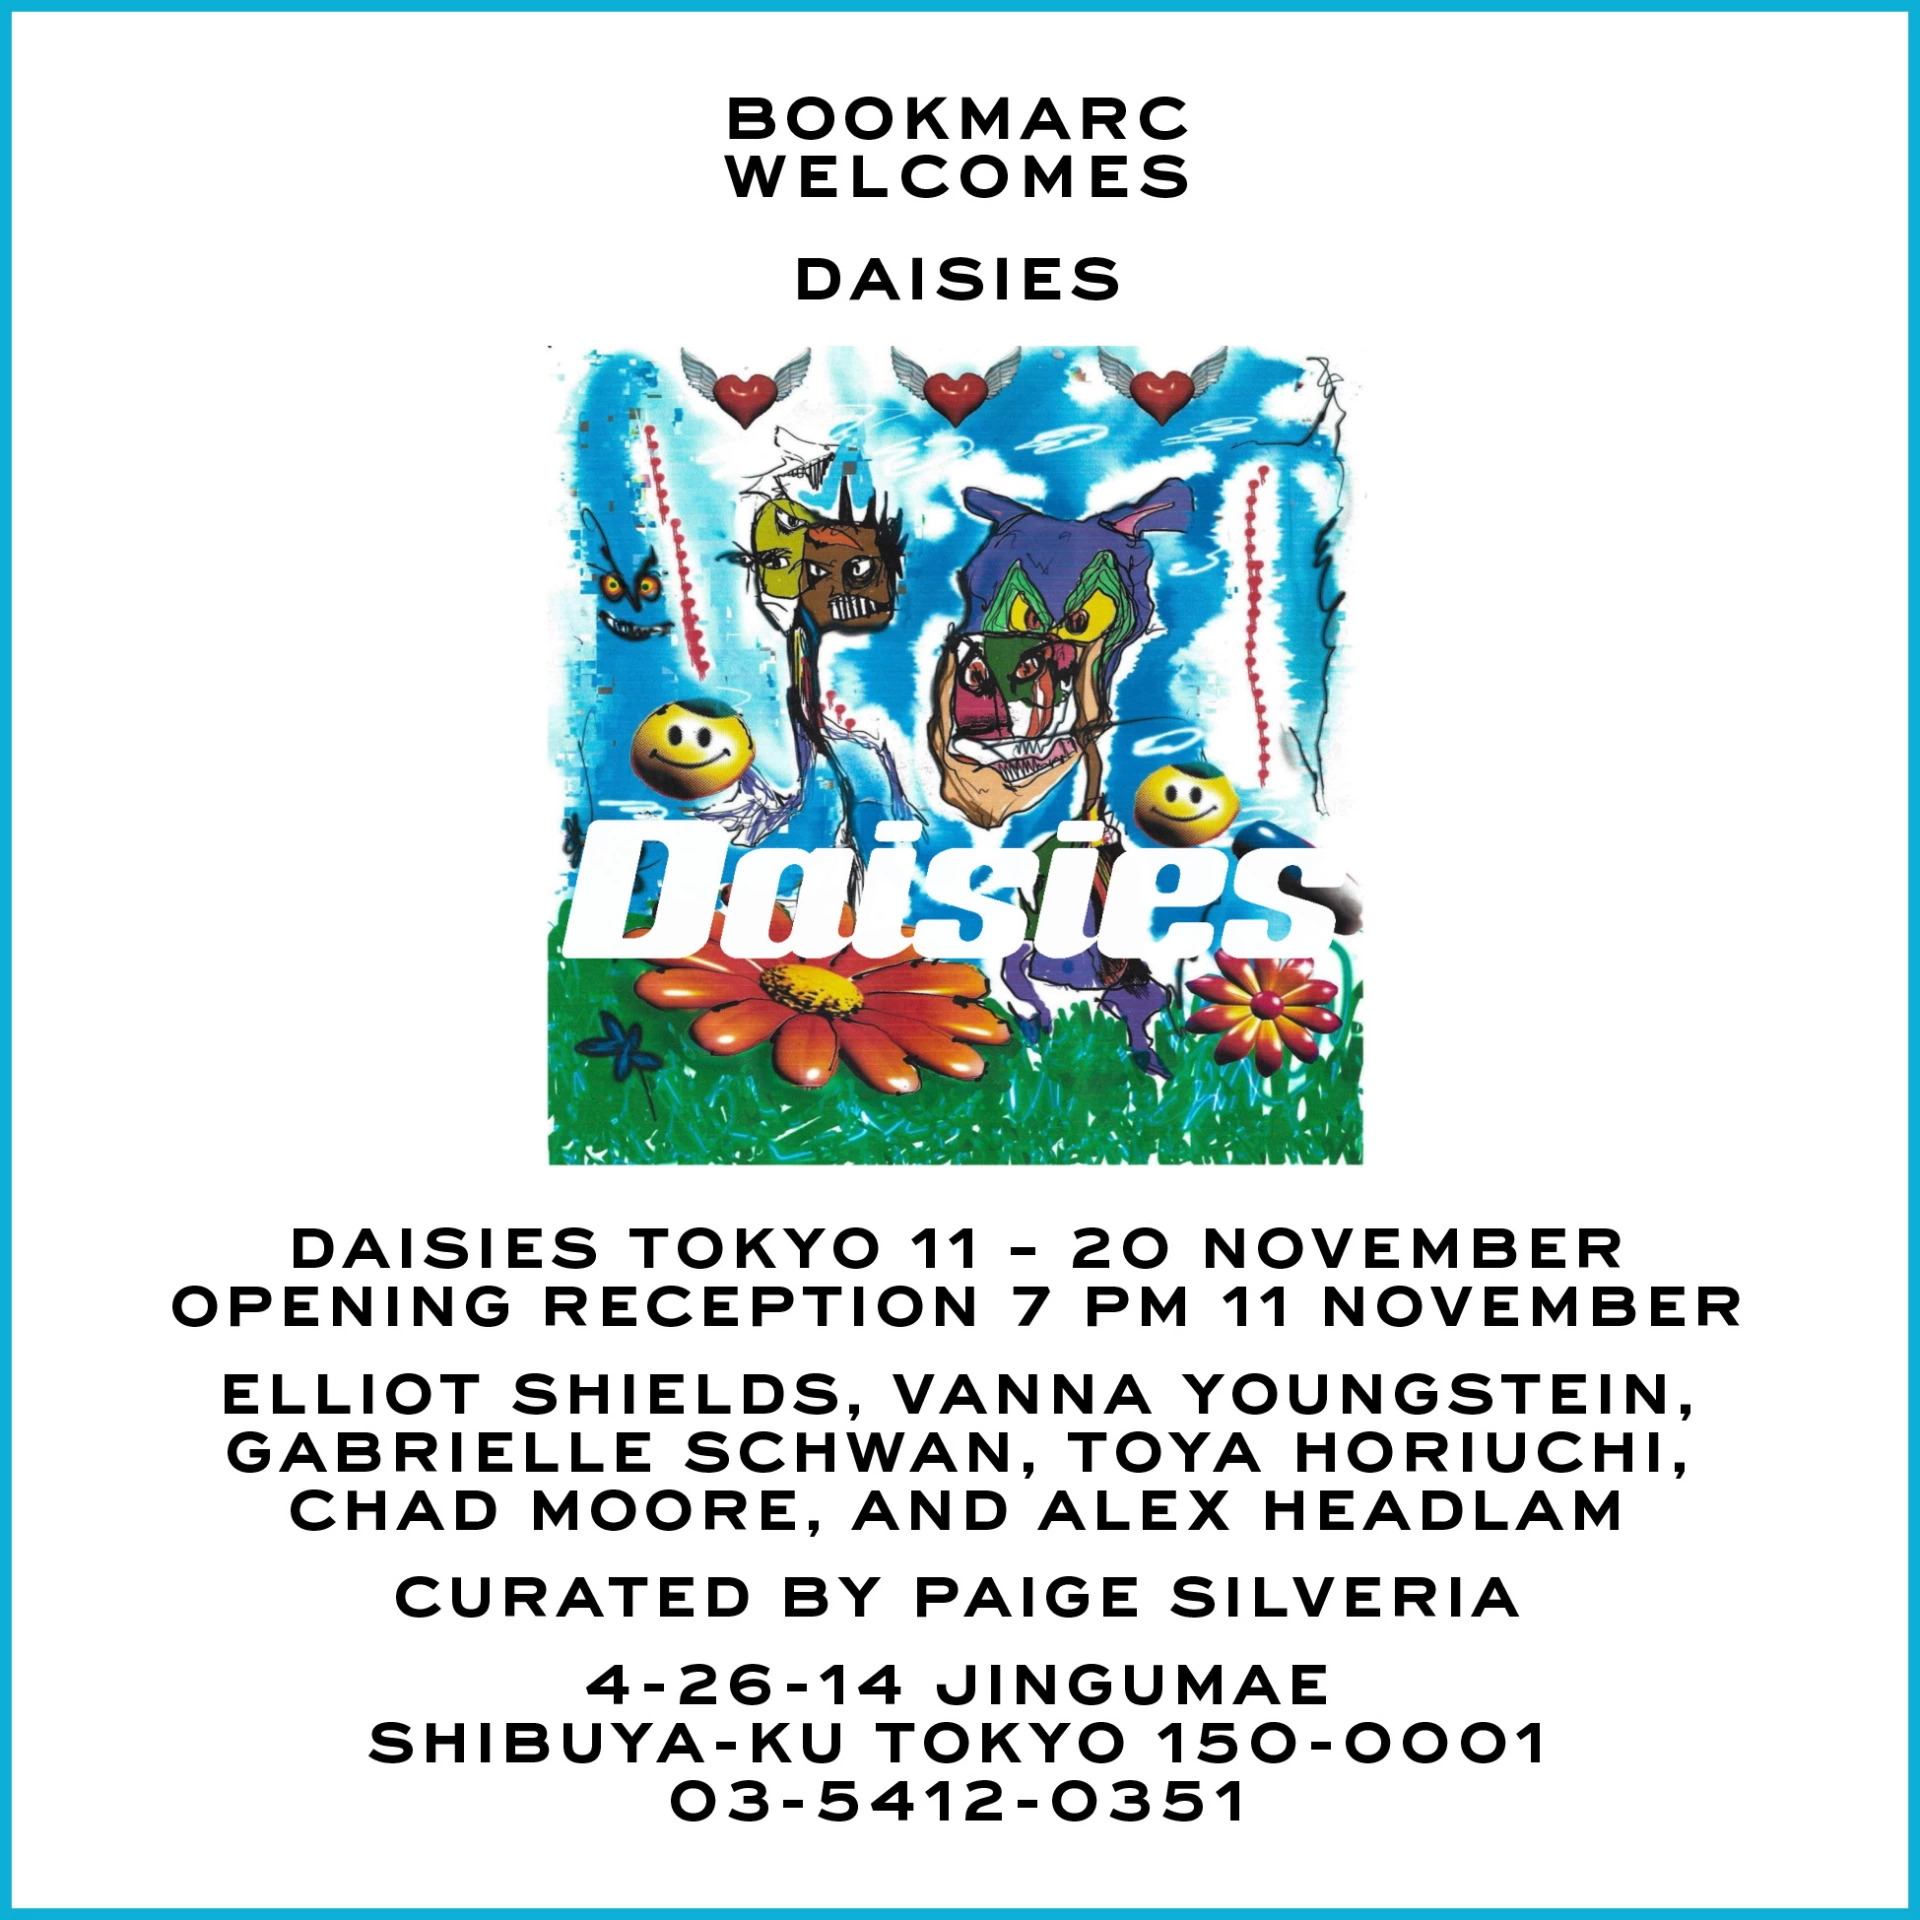 Daisies Tokyo The group exhibition of Elliot Shields, Vanna Yougnstein, Gabrielle Schwan, Toya Horiuchi, Chad Moore, and Alex Headlam